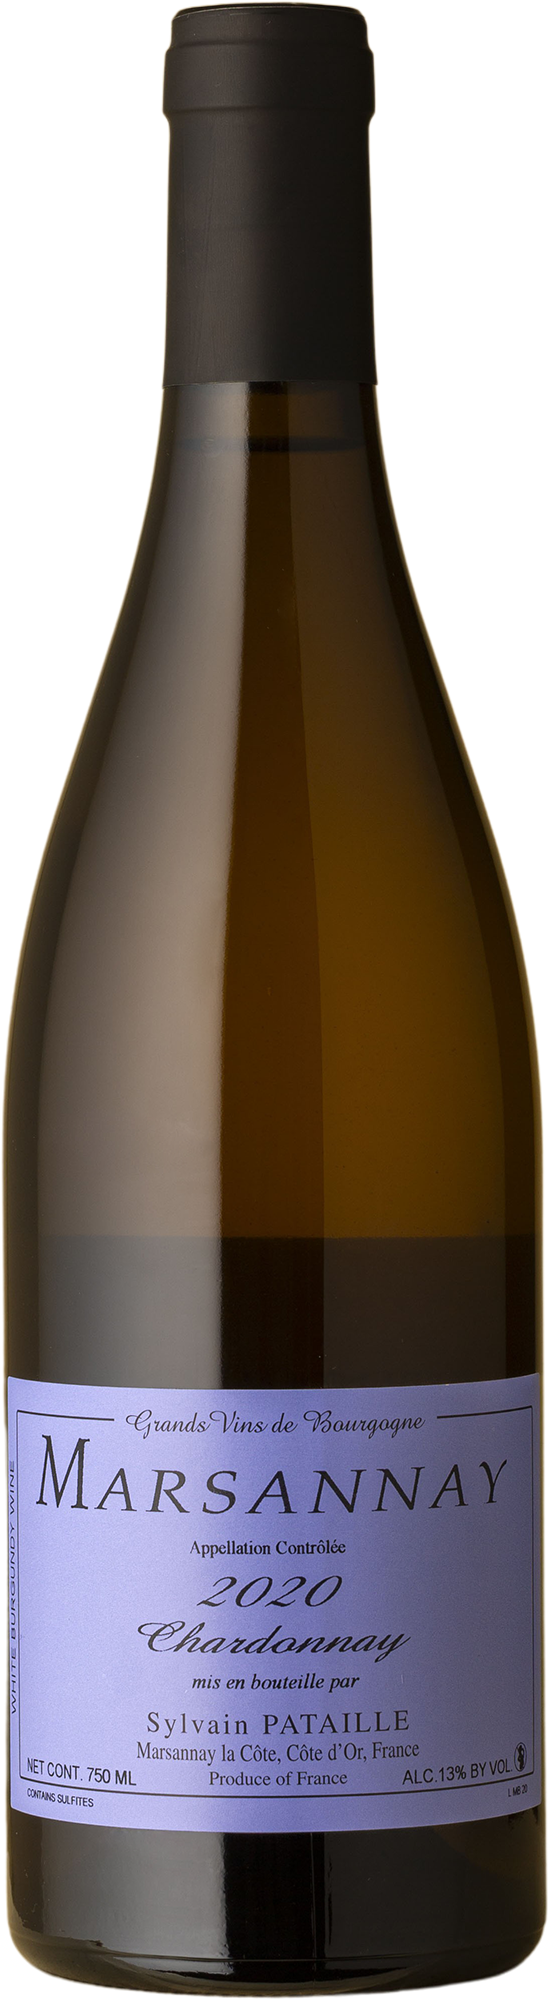 Sylvain Pataille - Marsannay Chardonnay 2020 White Wine